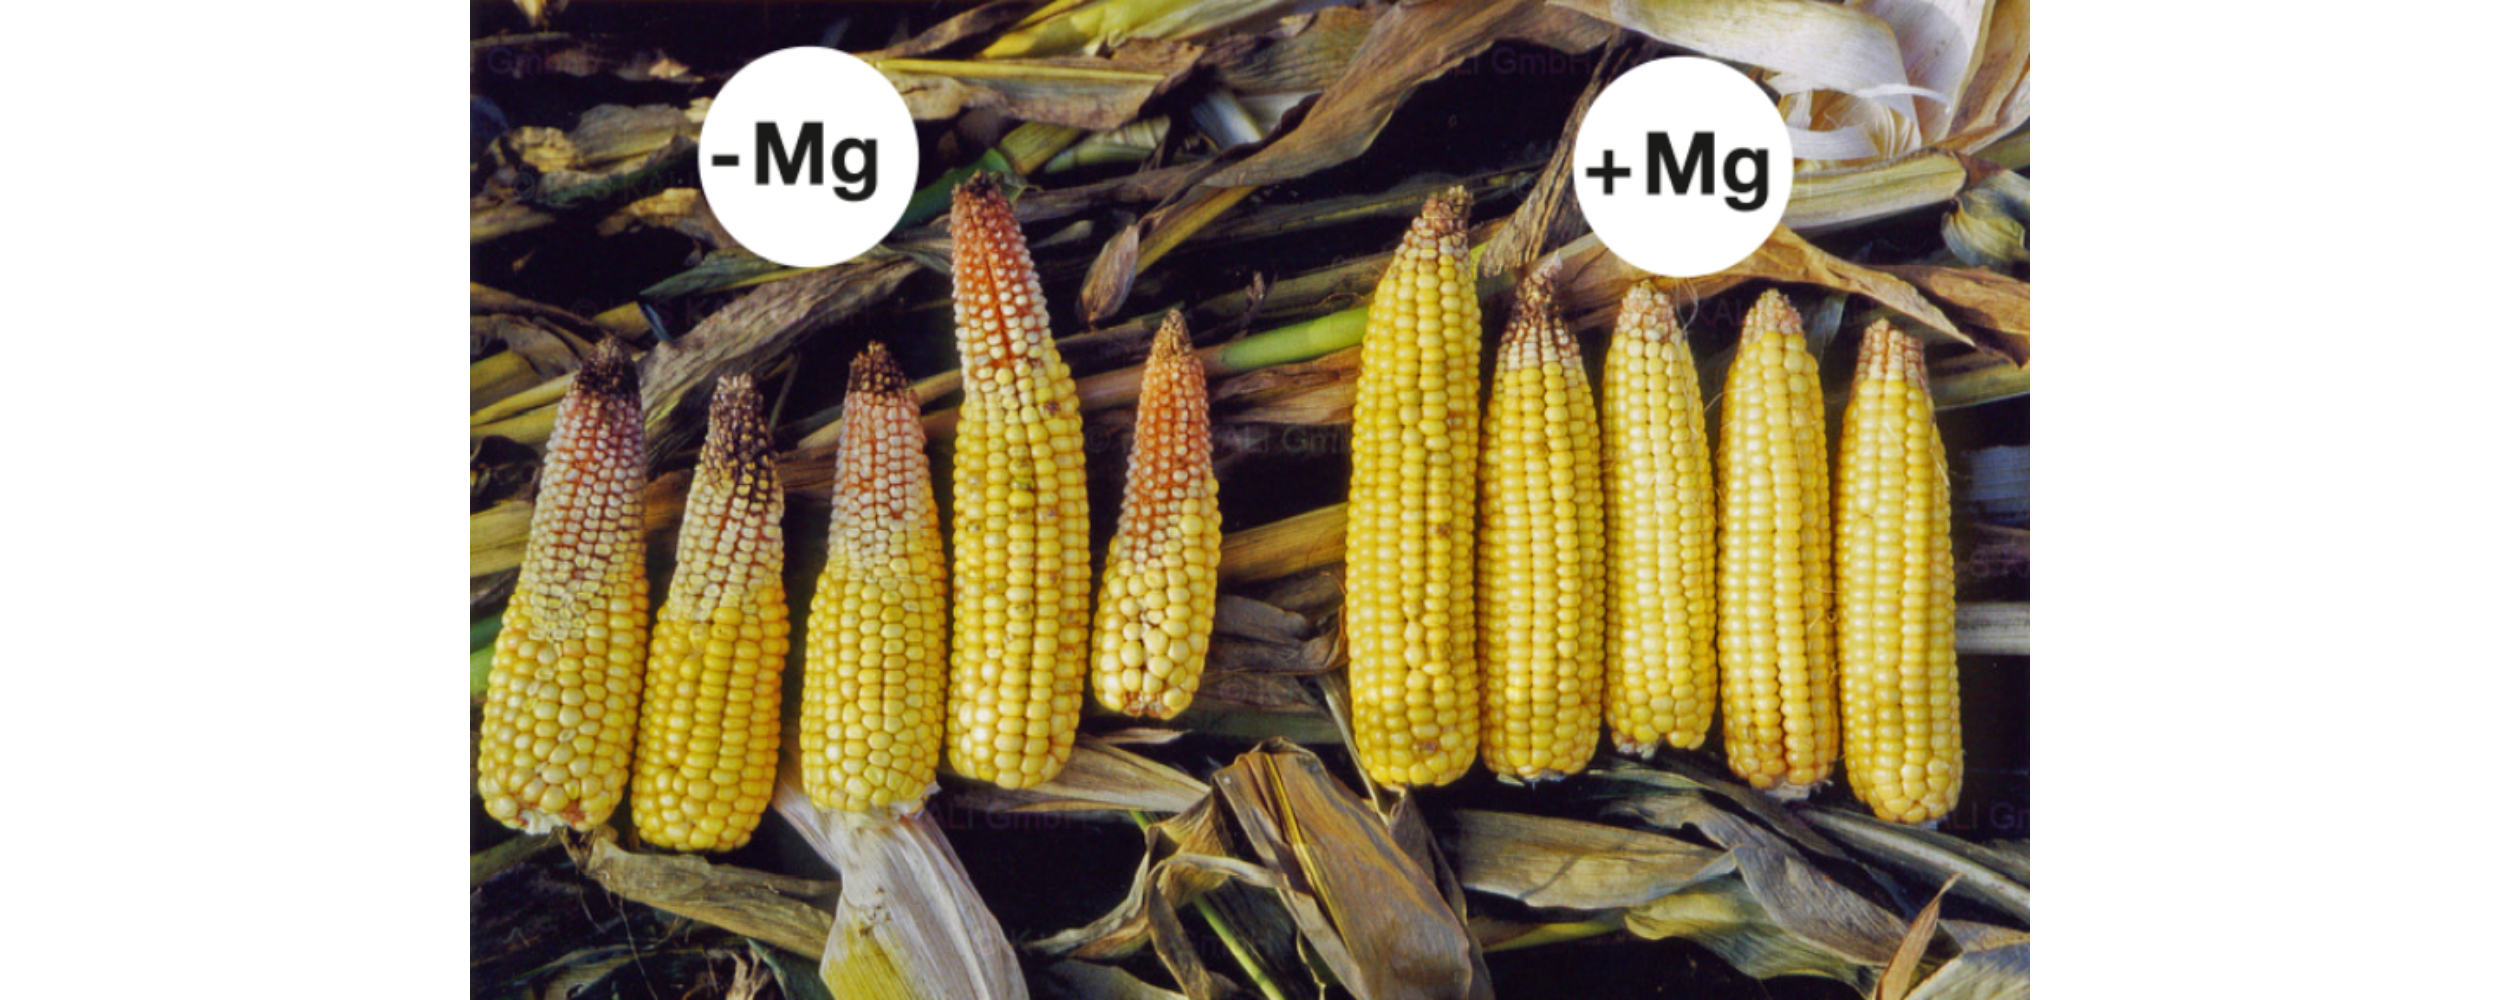 El magnesio fomenta el llenado de la mazorca en el caso del maíz. En caso de falta de magnesio (izquierda), se atrofia parte de los granos, dado que no se transportan suficientes carbohidratos a la mazorca.